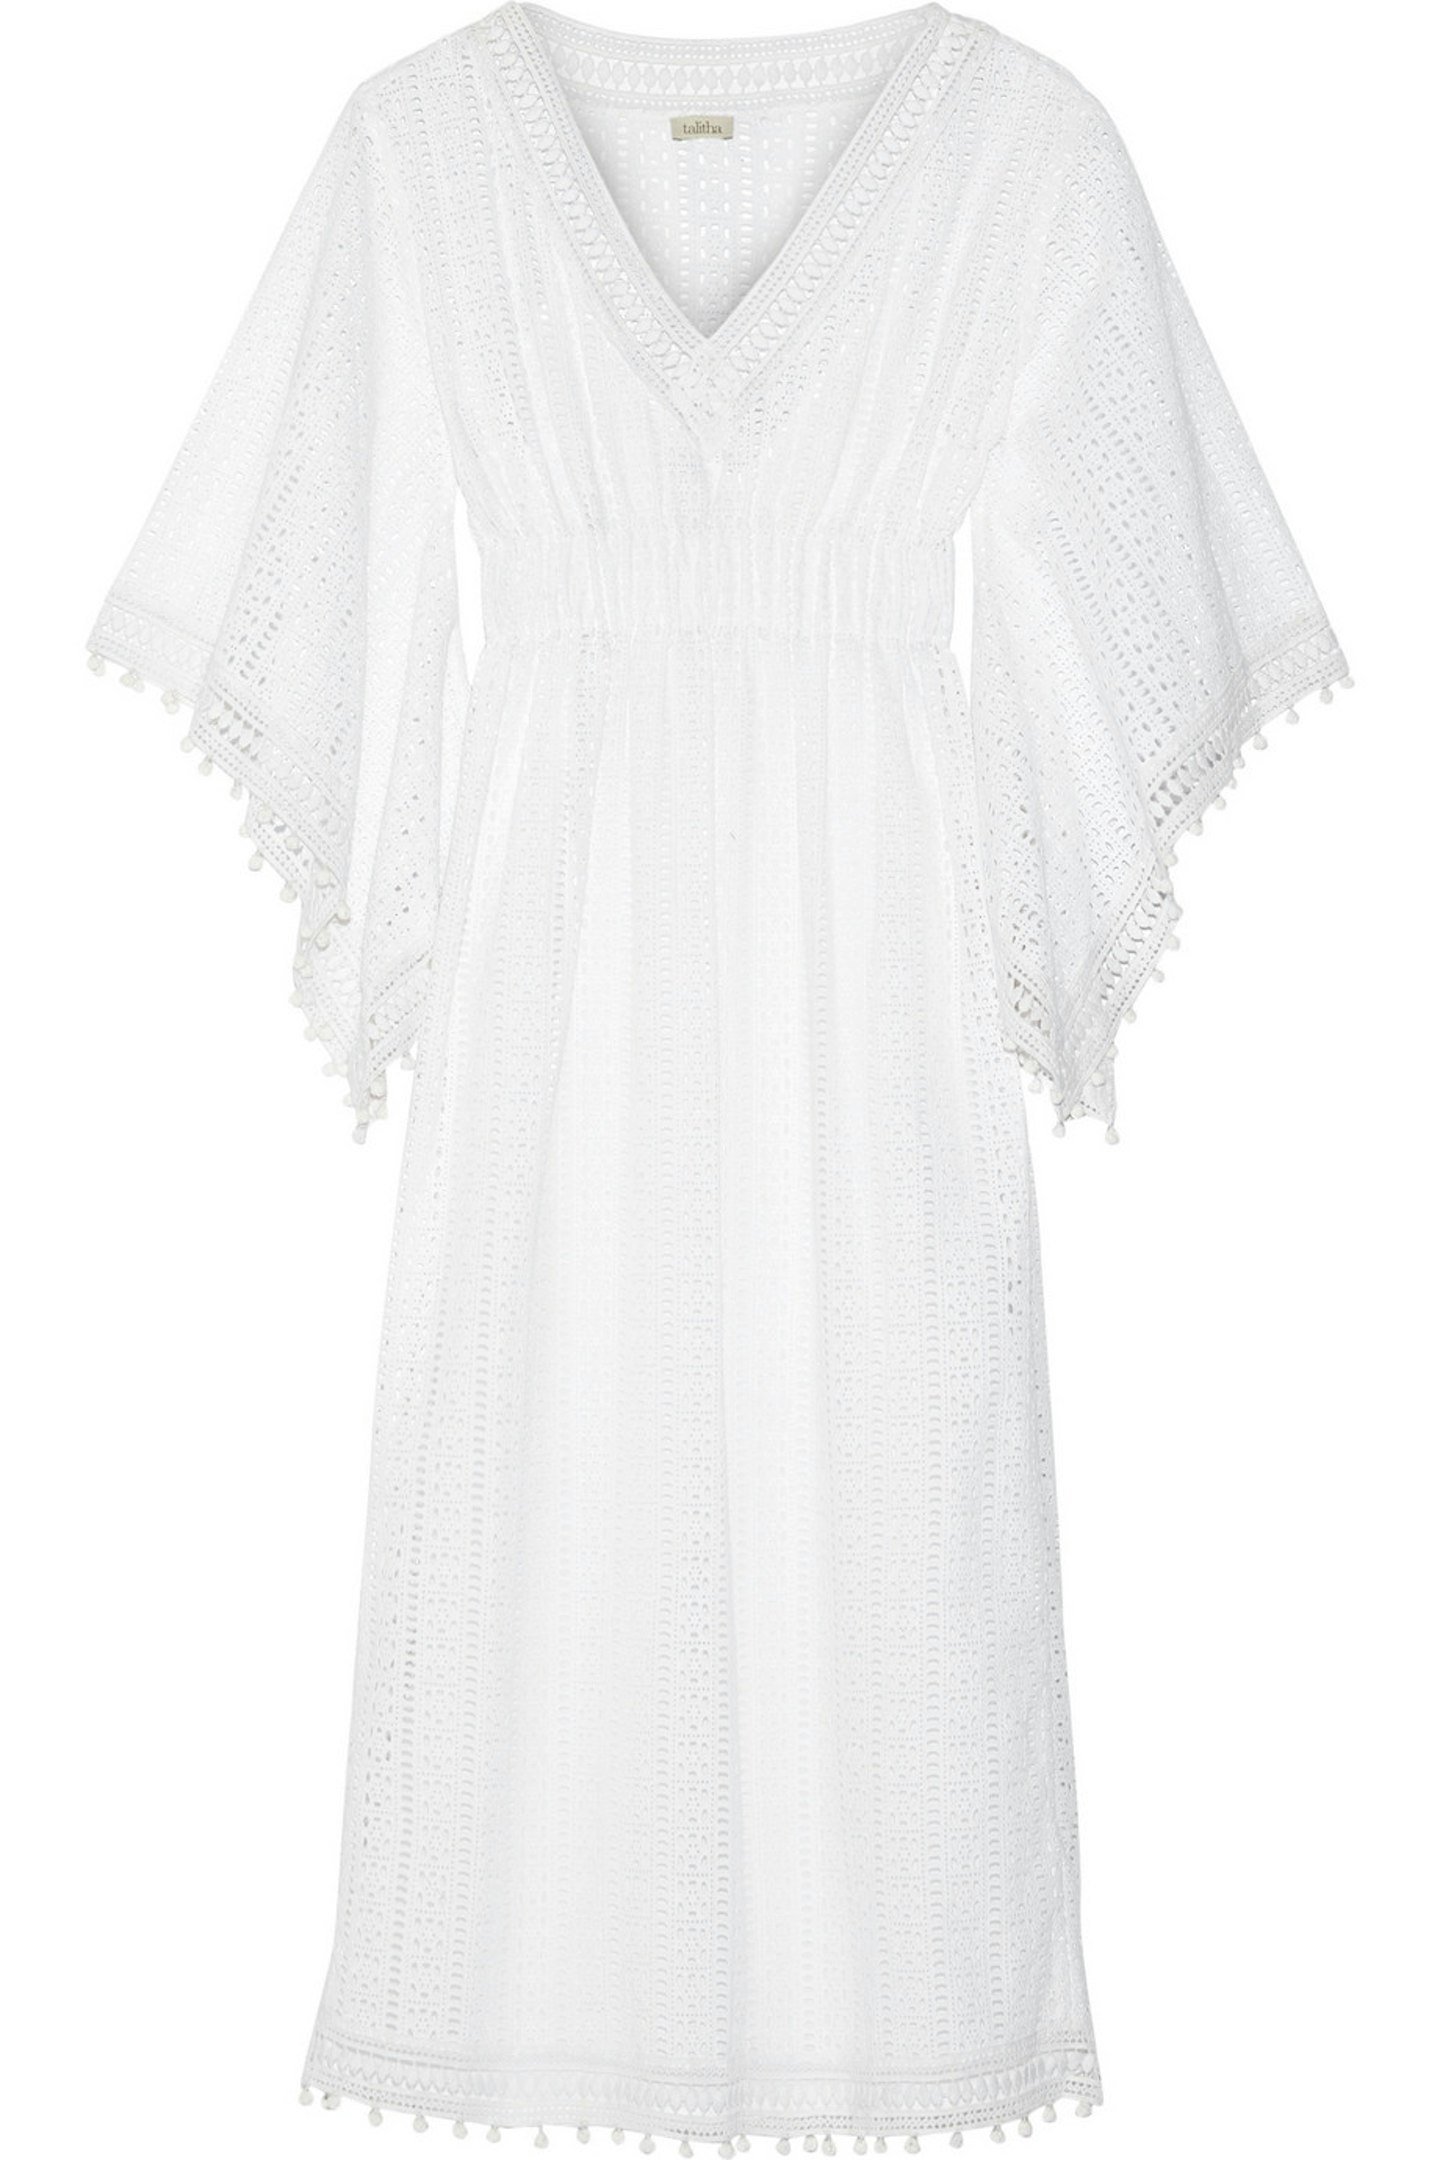 White Summer Dresses 2016